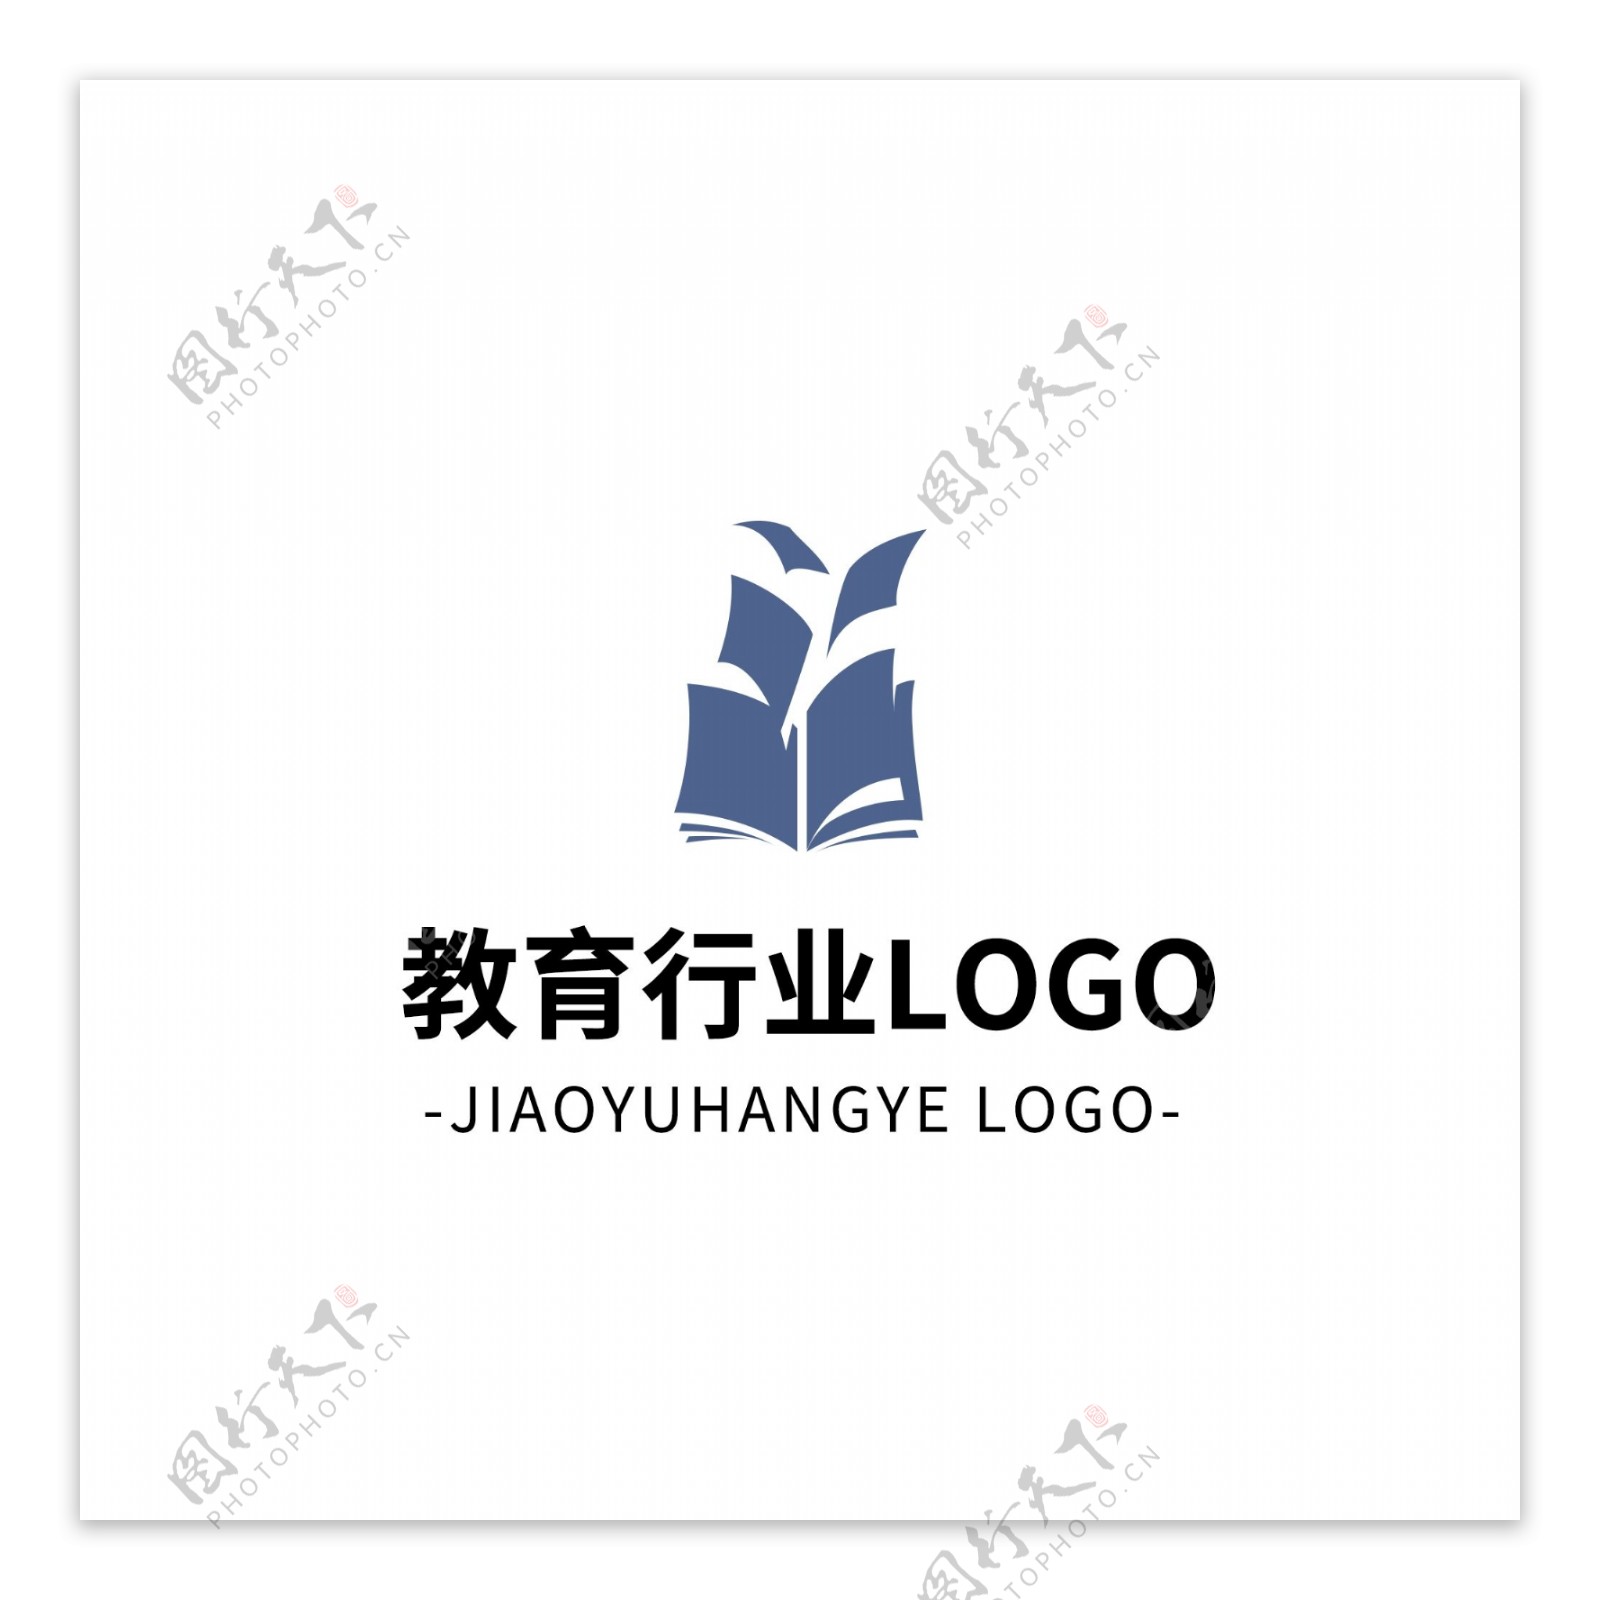 简约大气创意教育行业logo标志设计